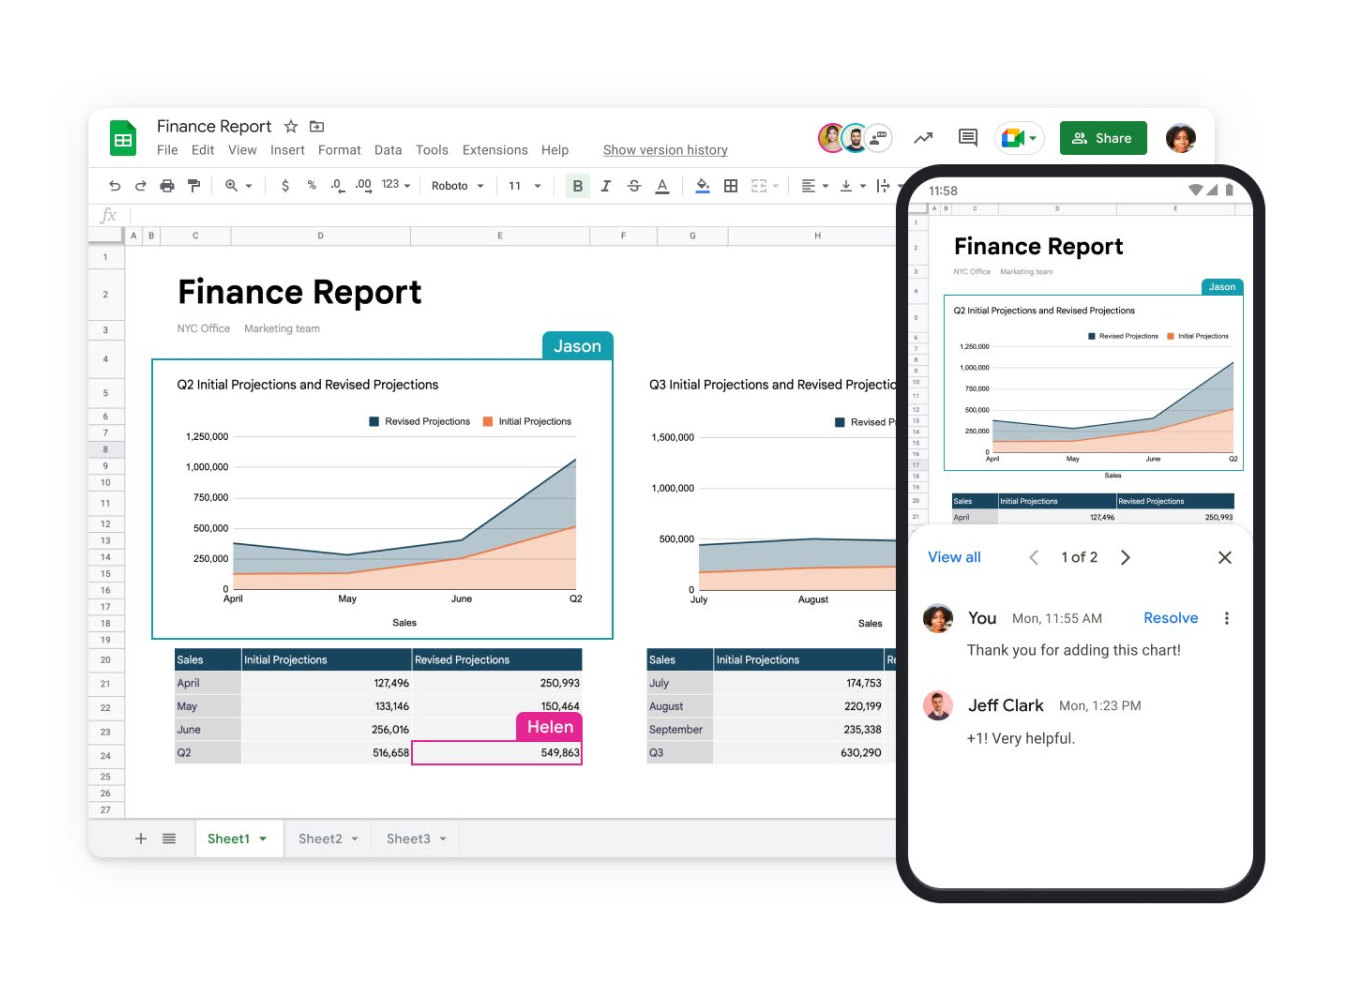 「財務報告」というタイトルの Google スプレッドシートがノートパソコンとモバイルの画面に表示されている。